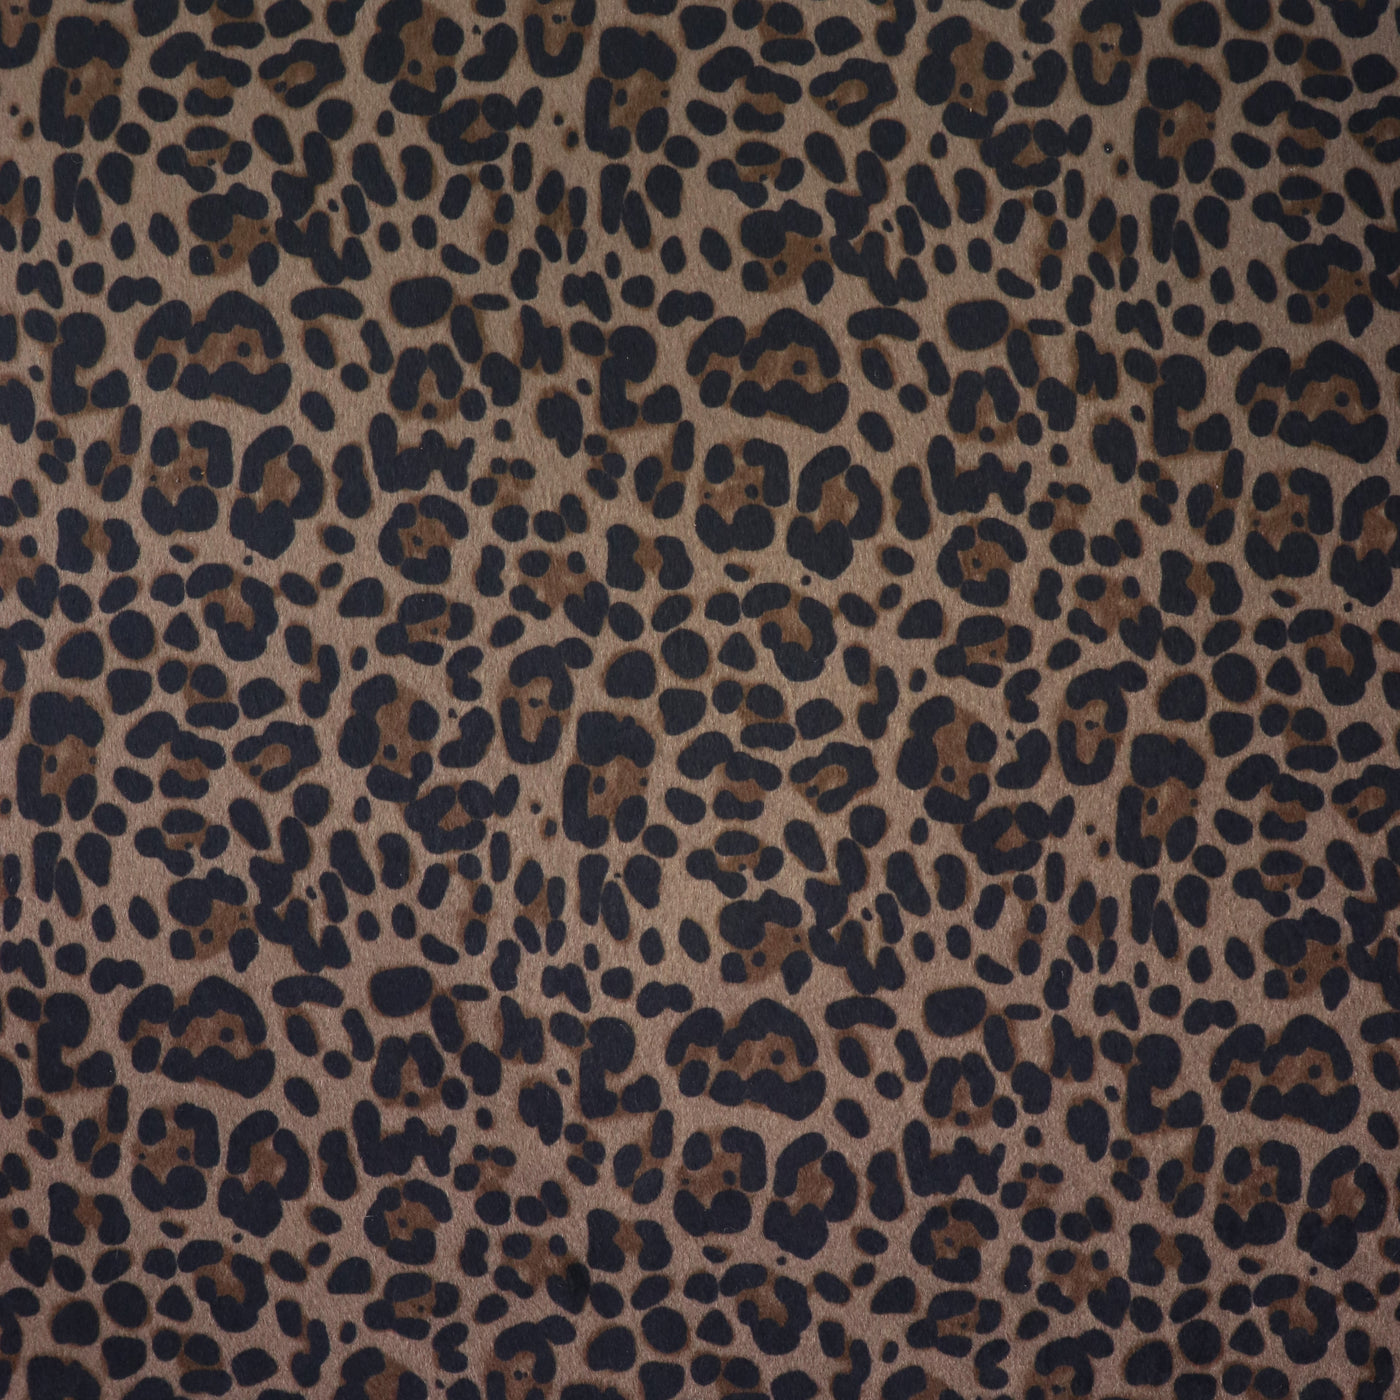 Piel sintética de leopardo, carbón y moca